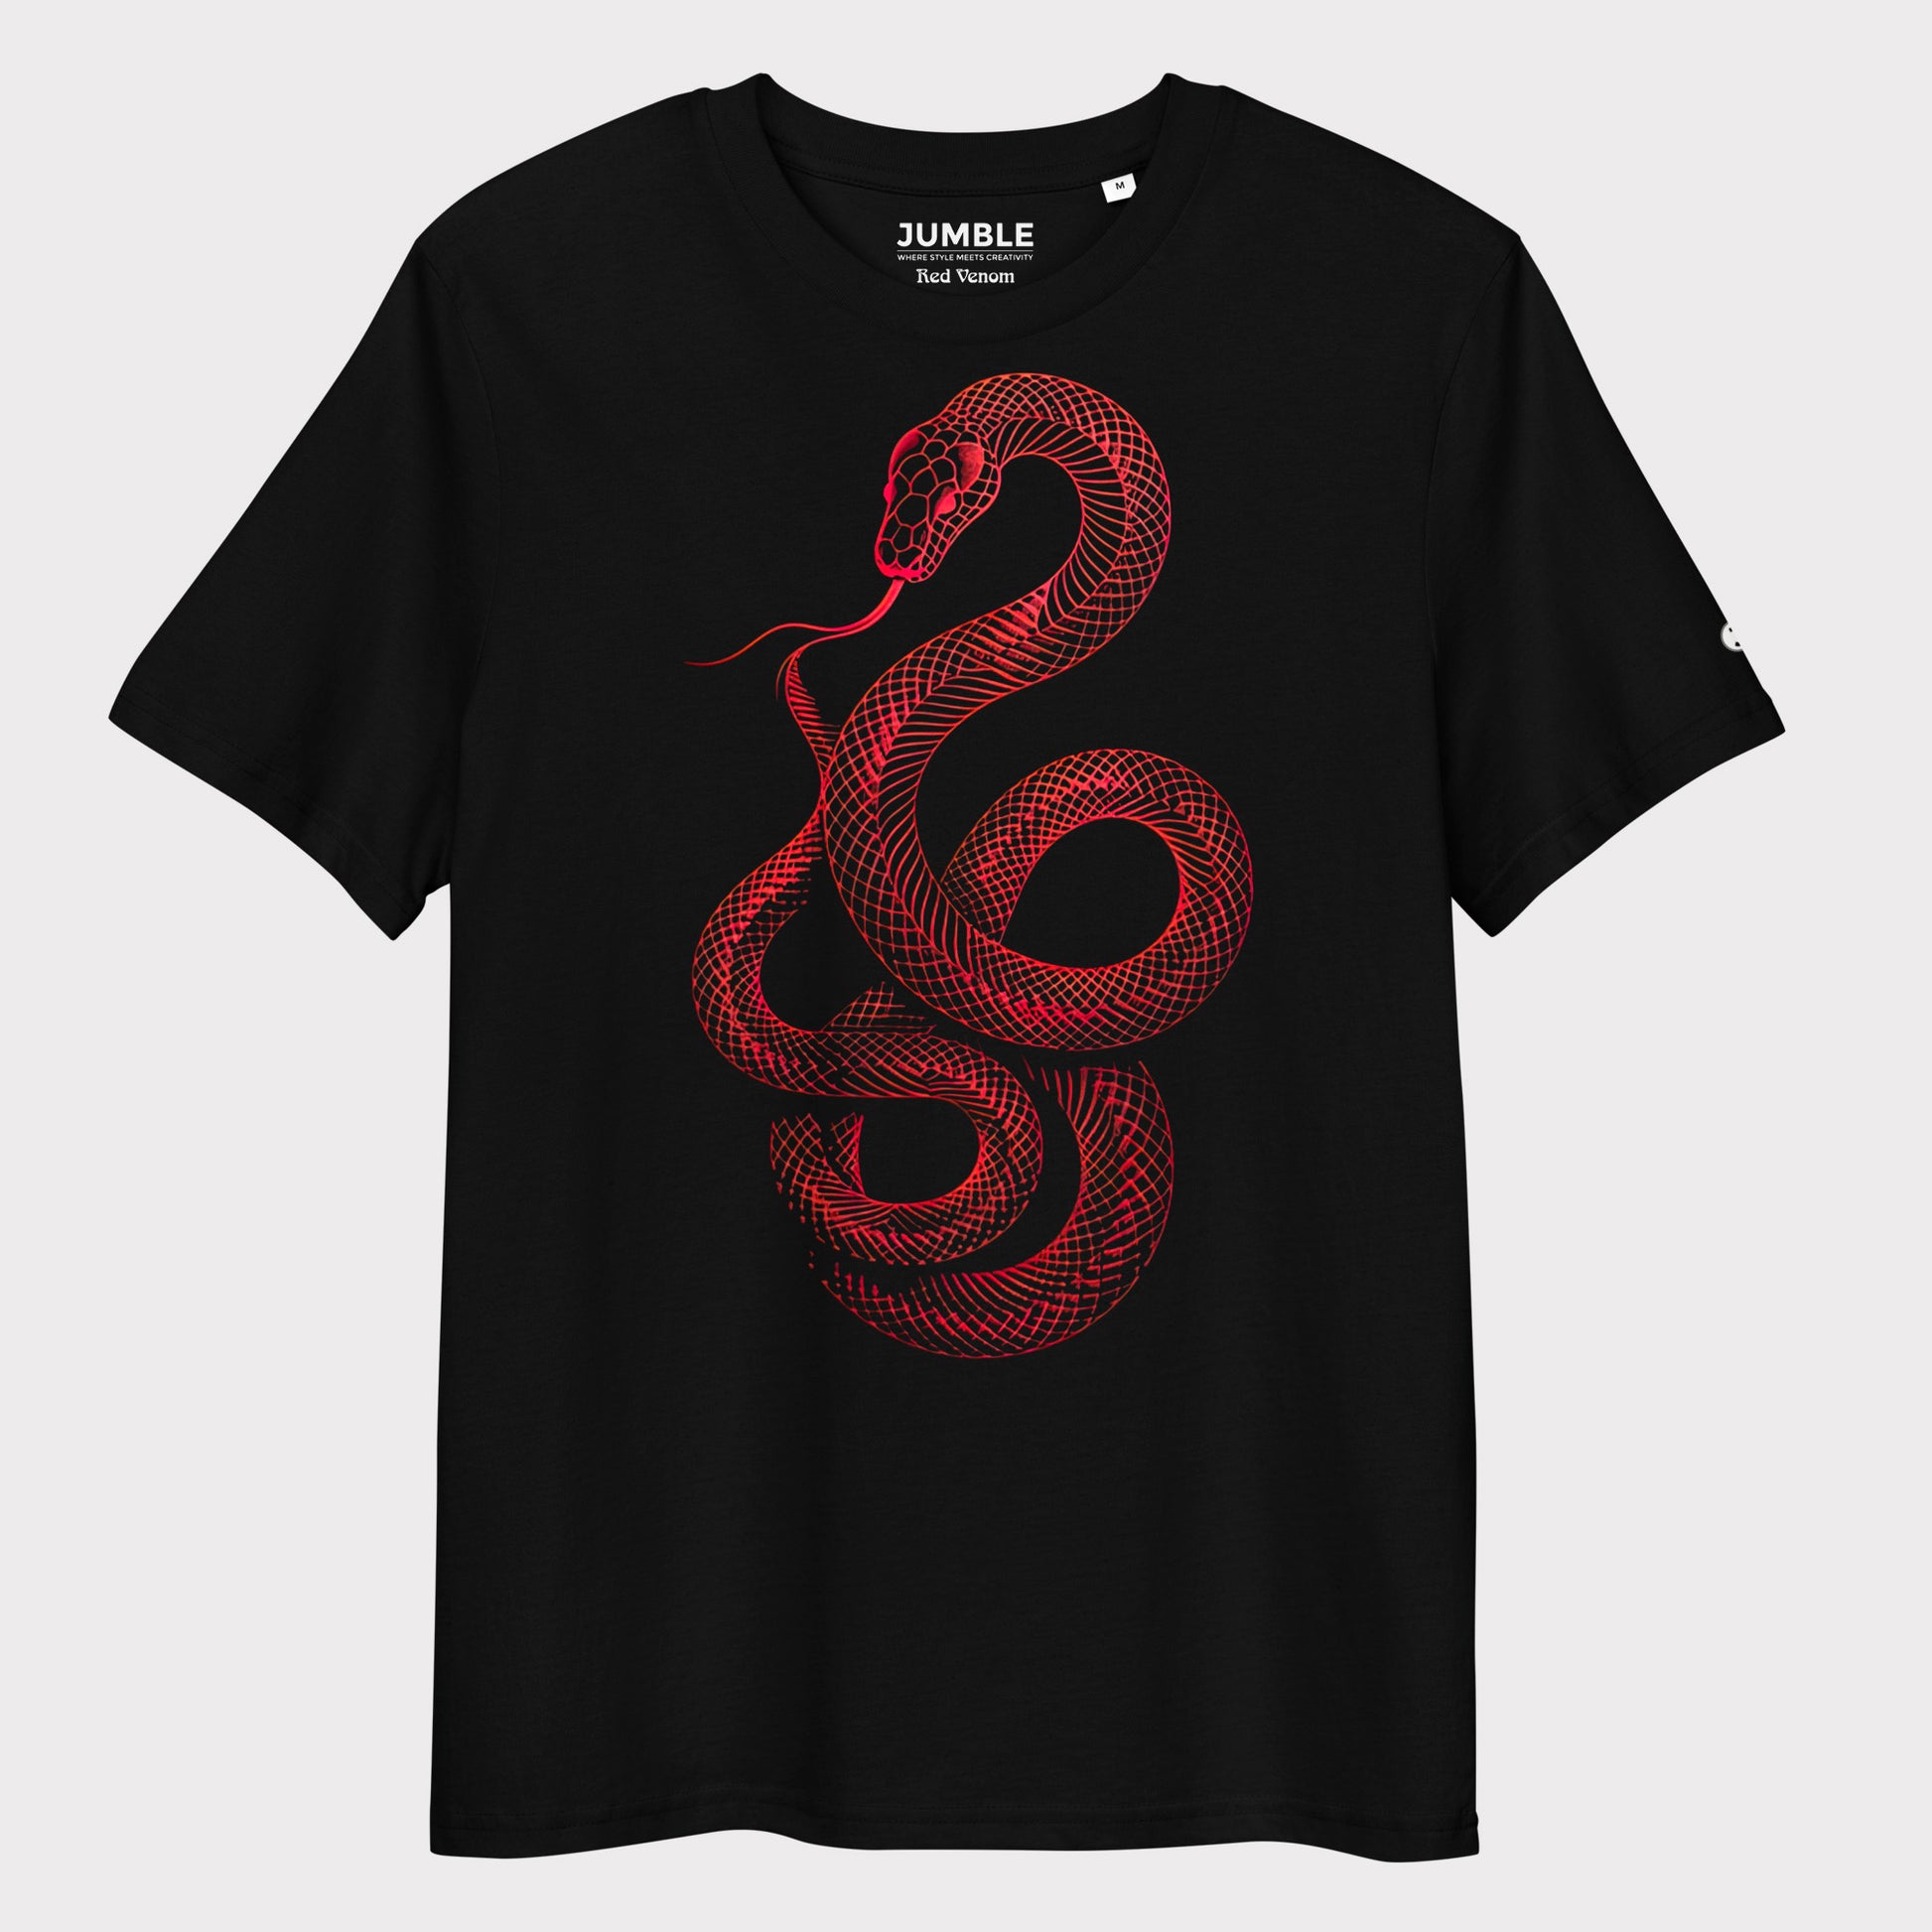 Red Venom Premium Unisex organic cotton t-shirt